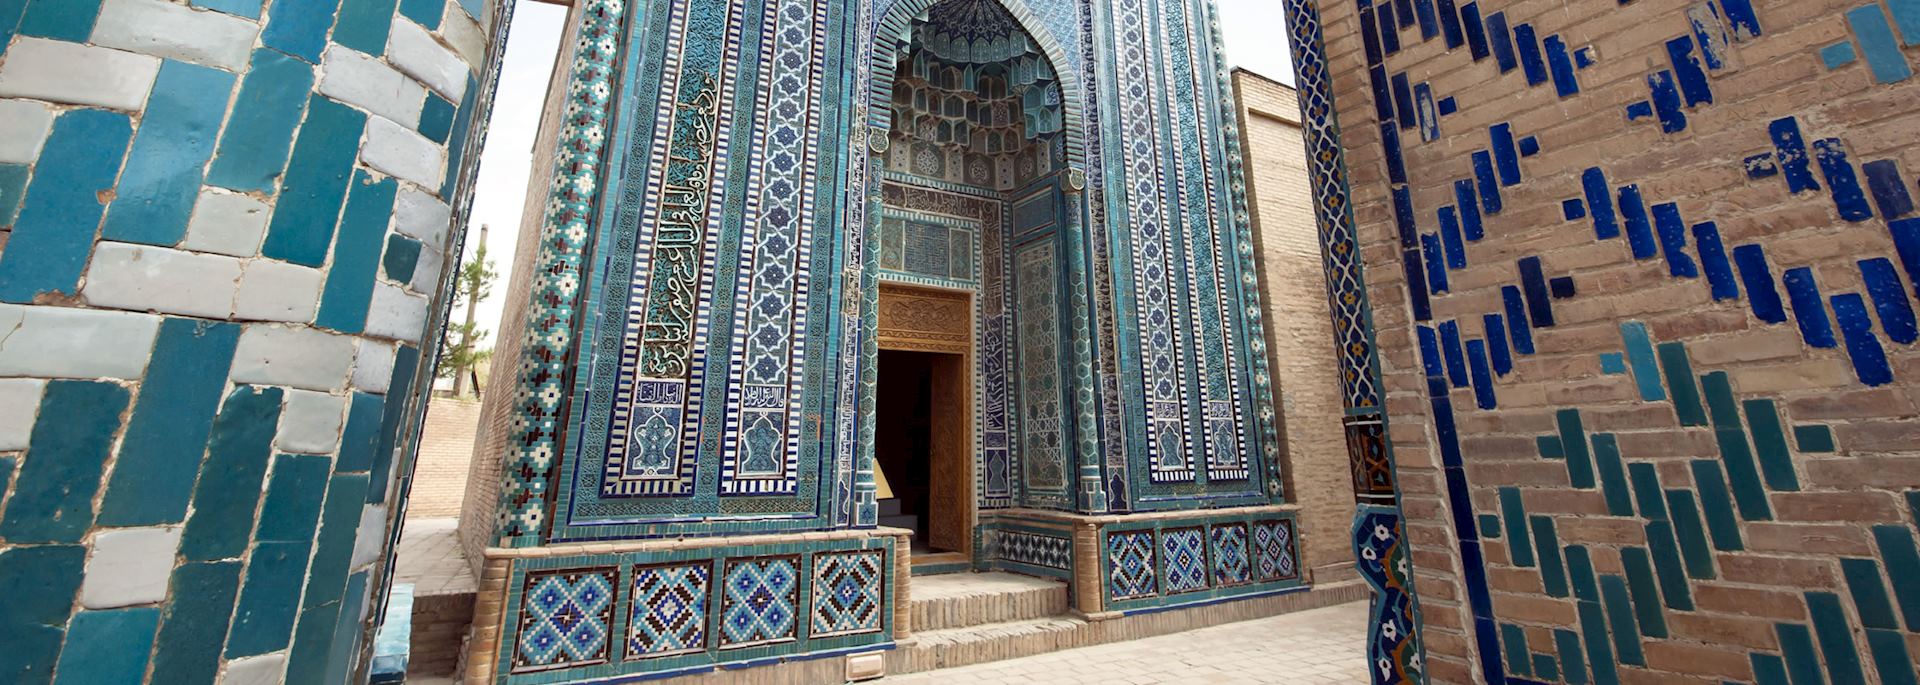 Shah-I-Zinda Mausoleum in Samarkand